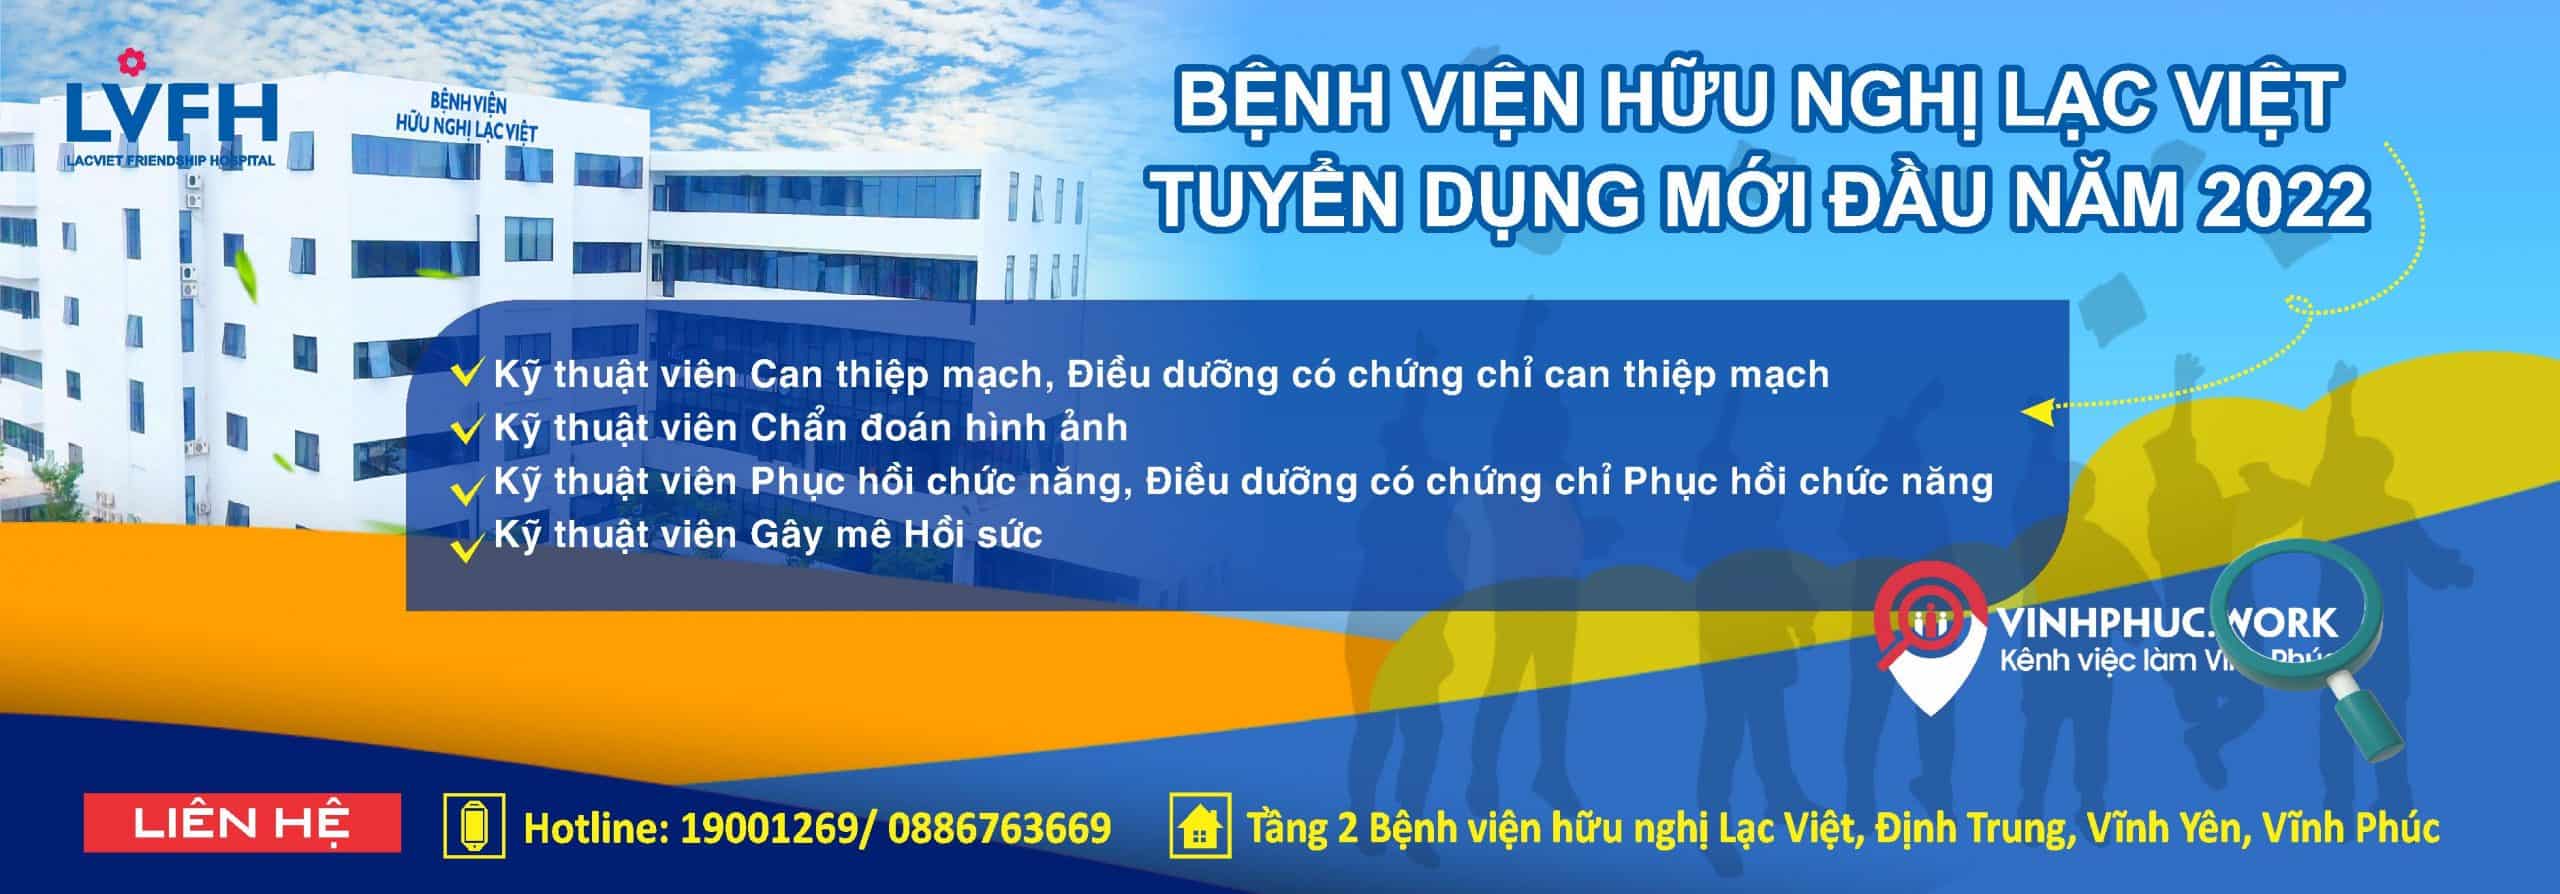 Benh Vien Huu Nghi Lac Viet Tuyen 04 Vi Tri Ky Thuat 9